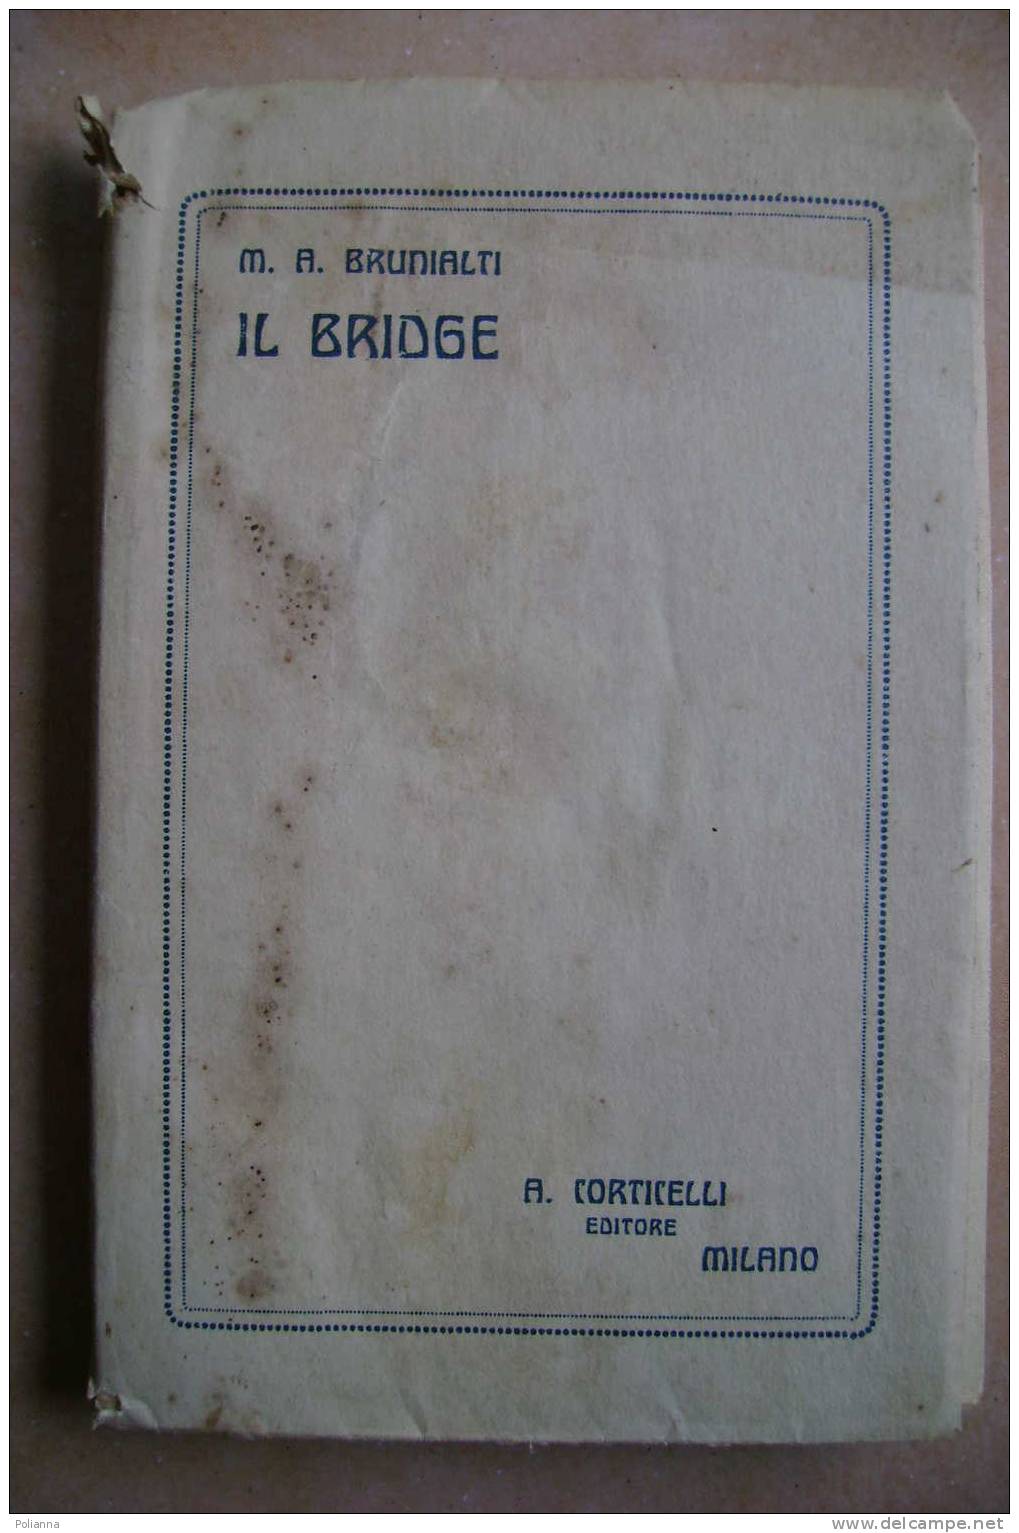 PDM/16 Brunialti IL BRIDGE Corticelli Editore 1923/giochi Carte - Spelletjes